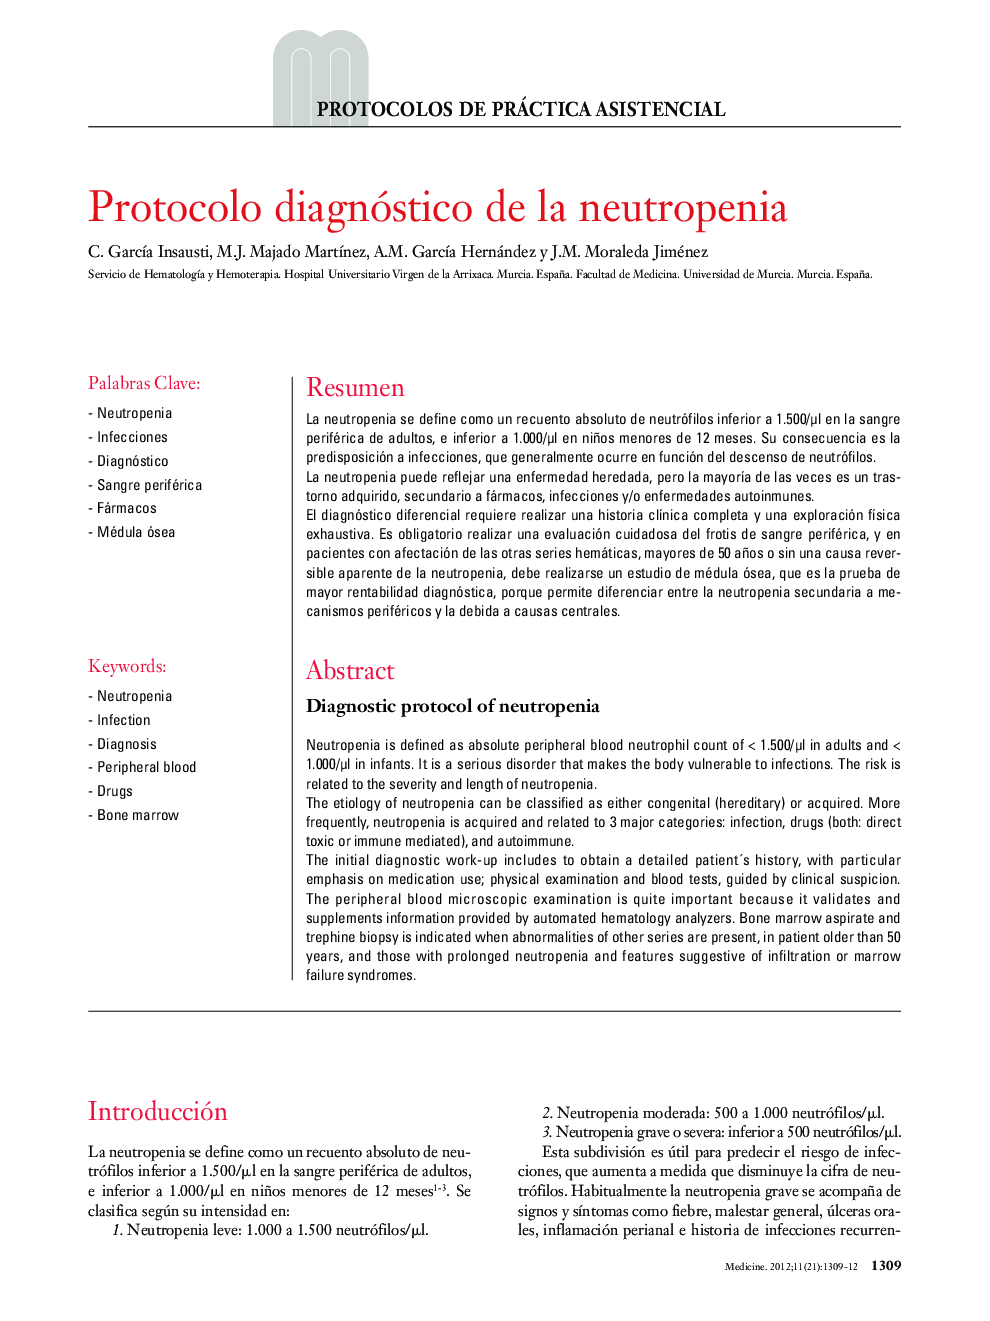 Protocolo diagnóstico de la neutropenia